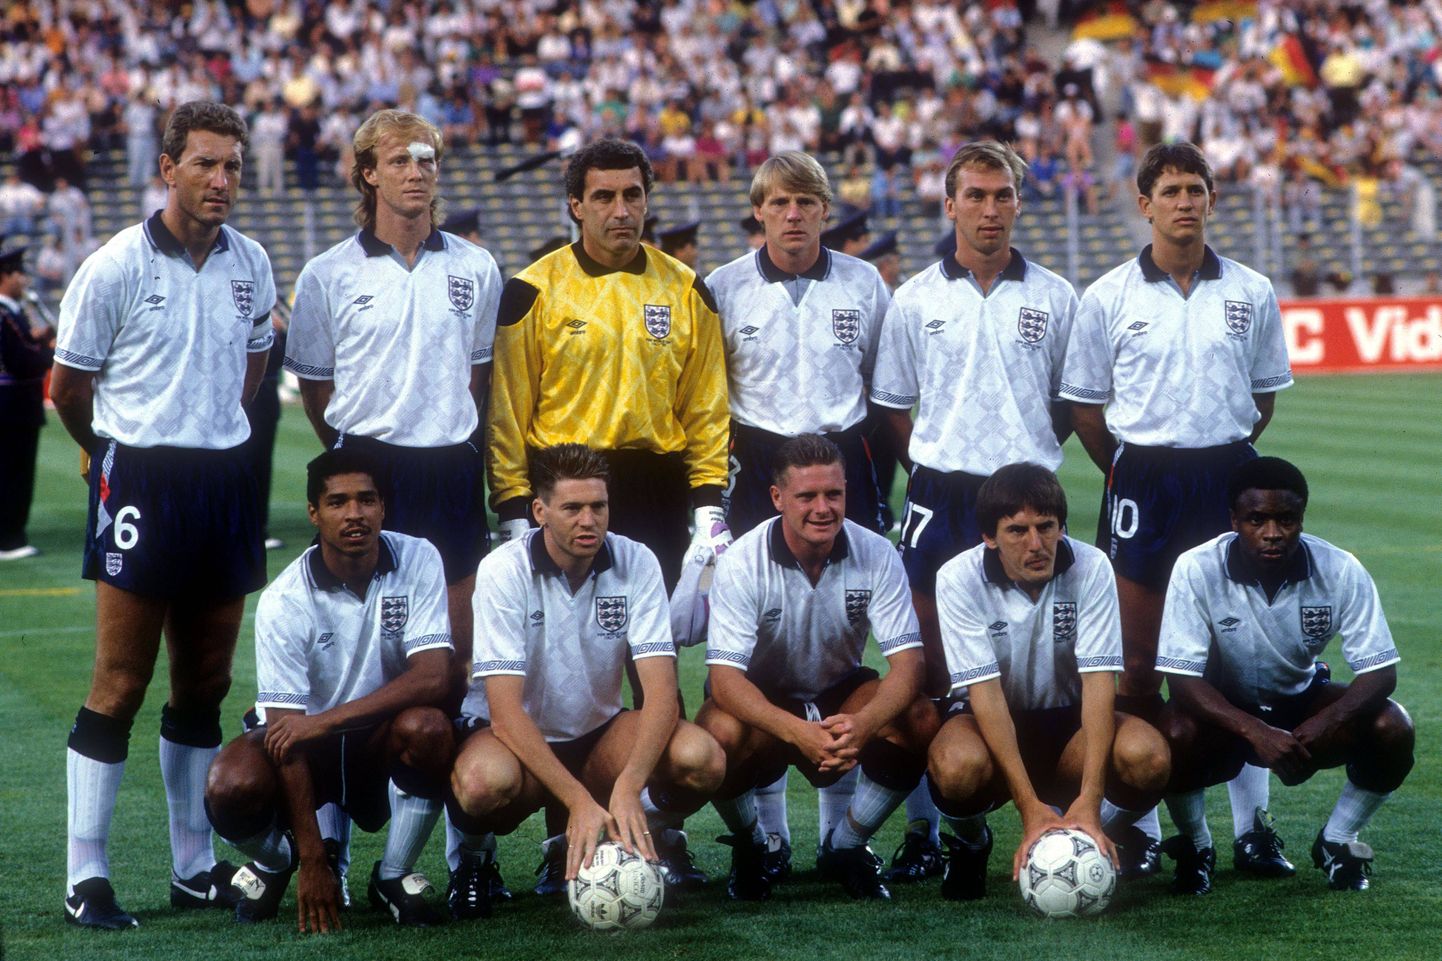 Inglismaa jalgpallikoondis 1990. aasta MM-finaalturniiril.